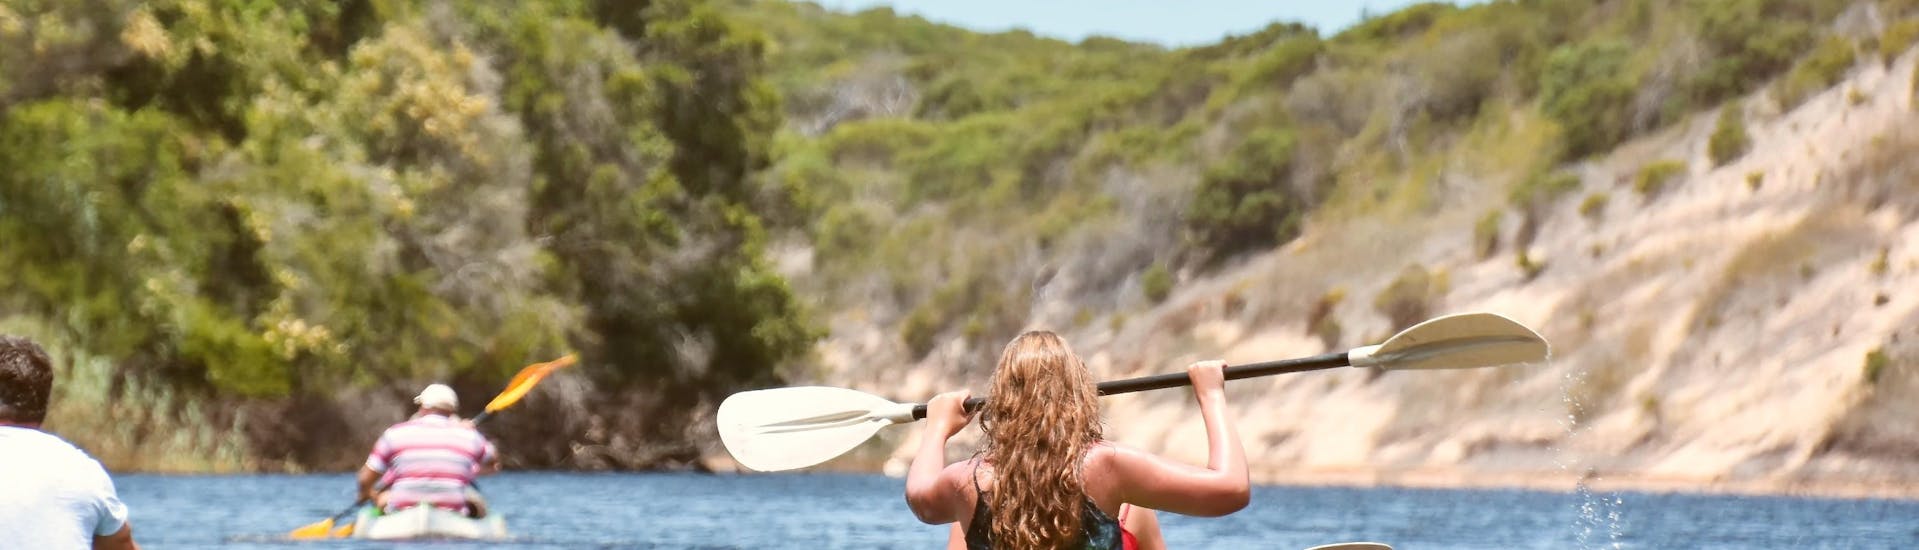 Une famille fait une location de kayak de mer à Hyères grâce à Spin Out.